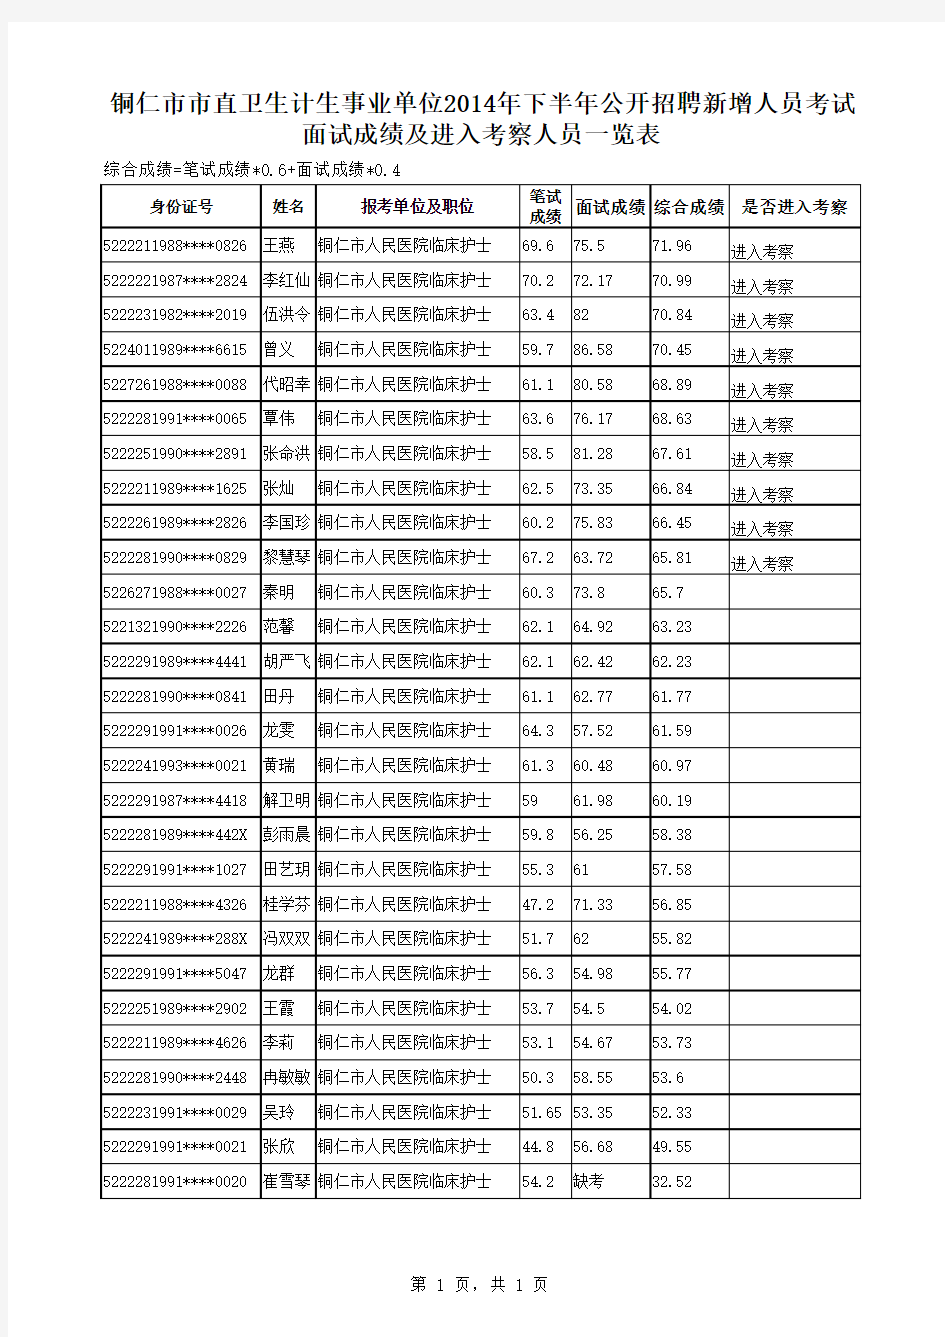 铜仁市市直卫生计生事业单位2014年下半年公开招聘新增